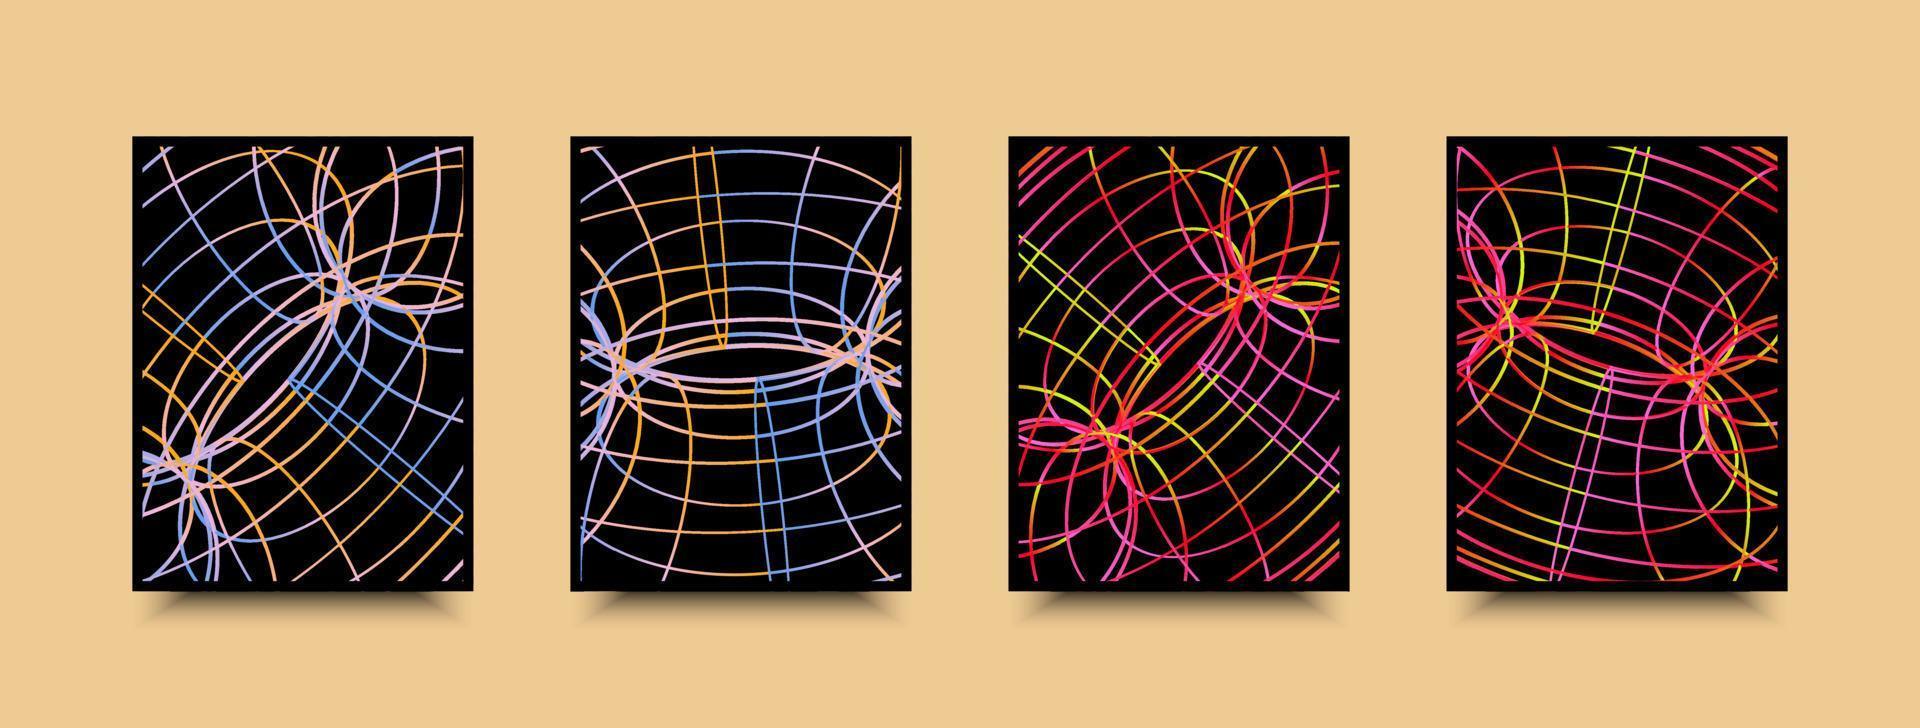 Geometrie Gitter Perspektive Drahtmodell Poster im Neon- Gradient Farben vektor